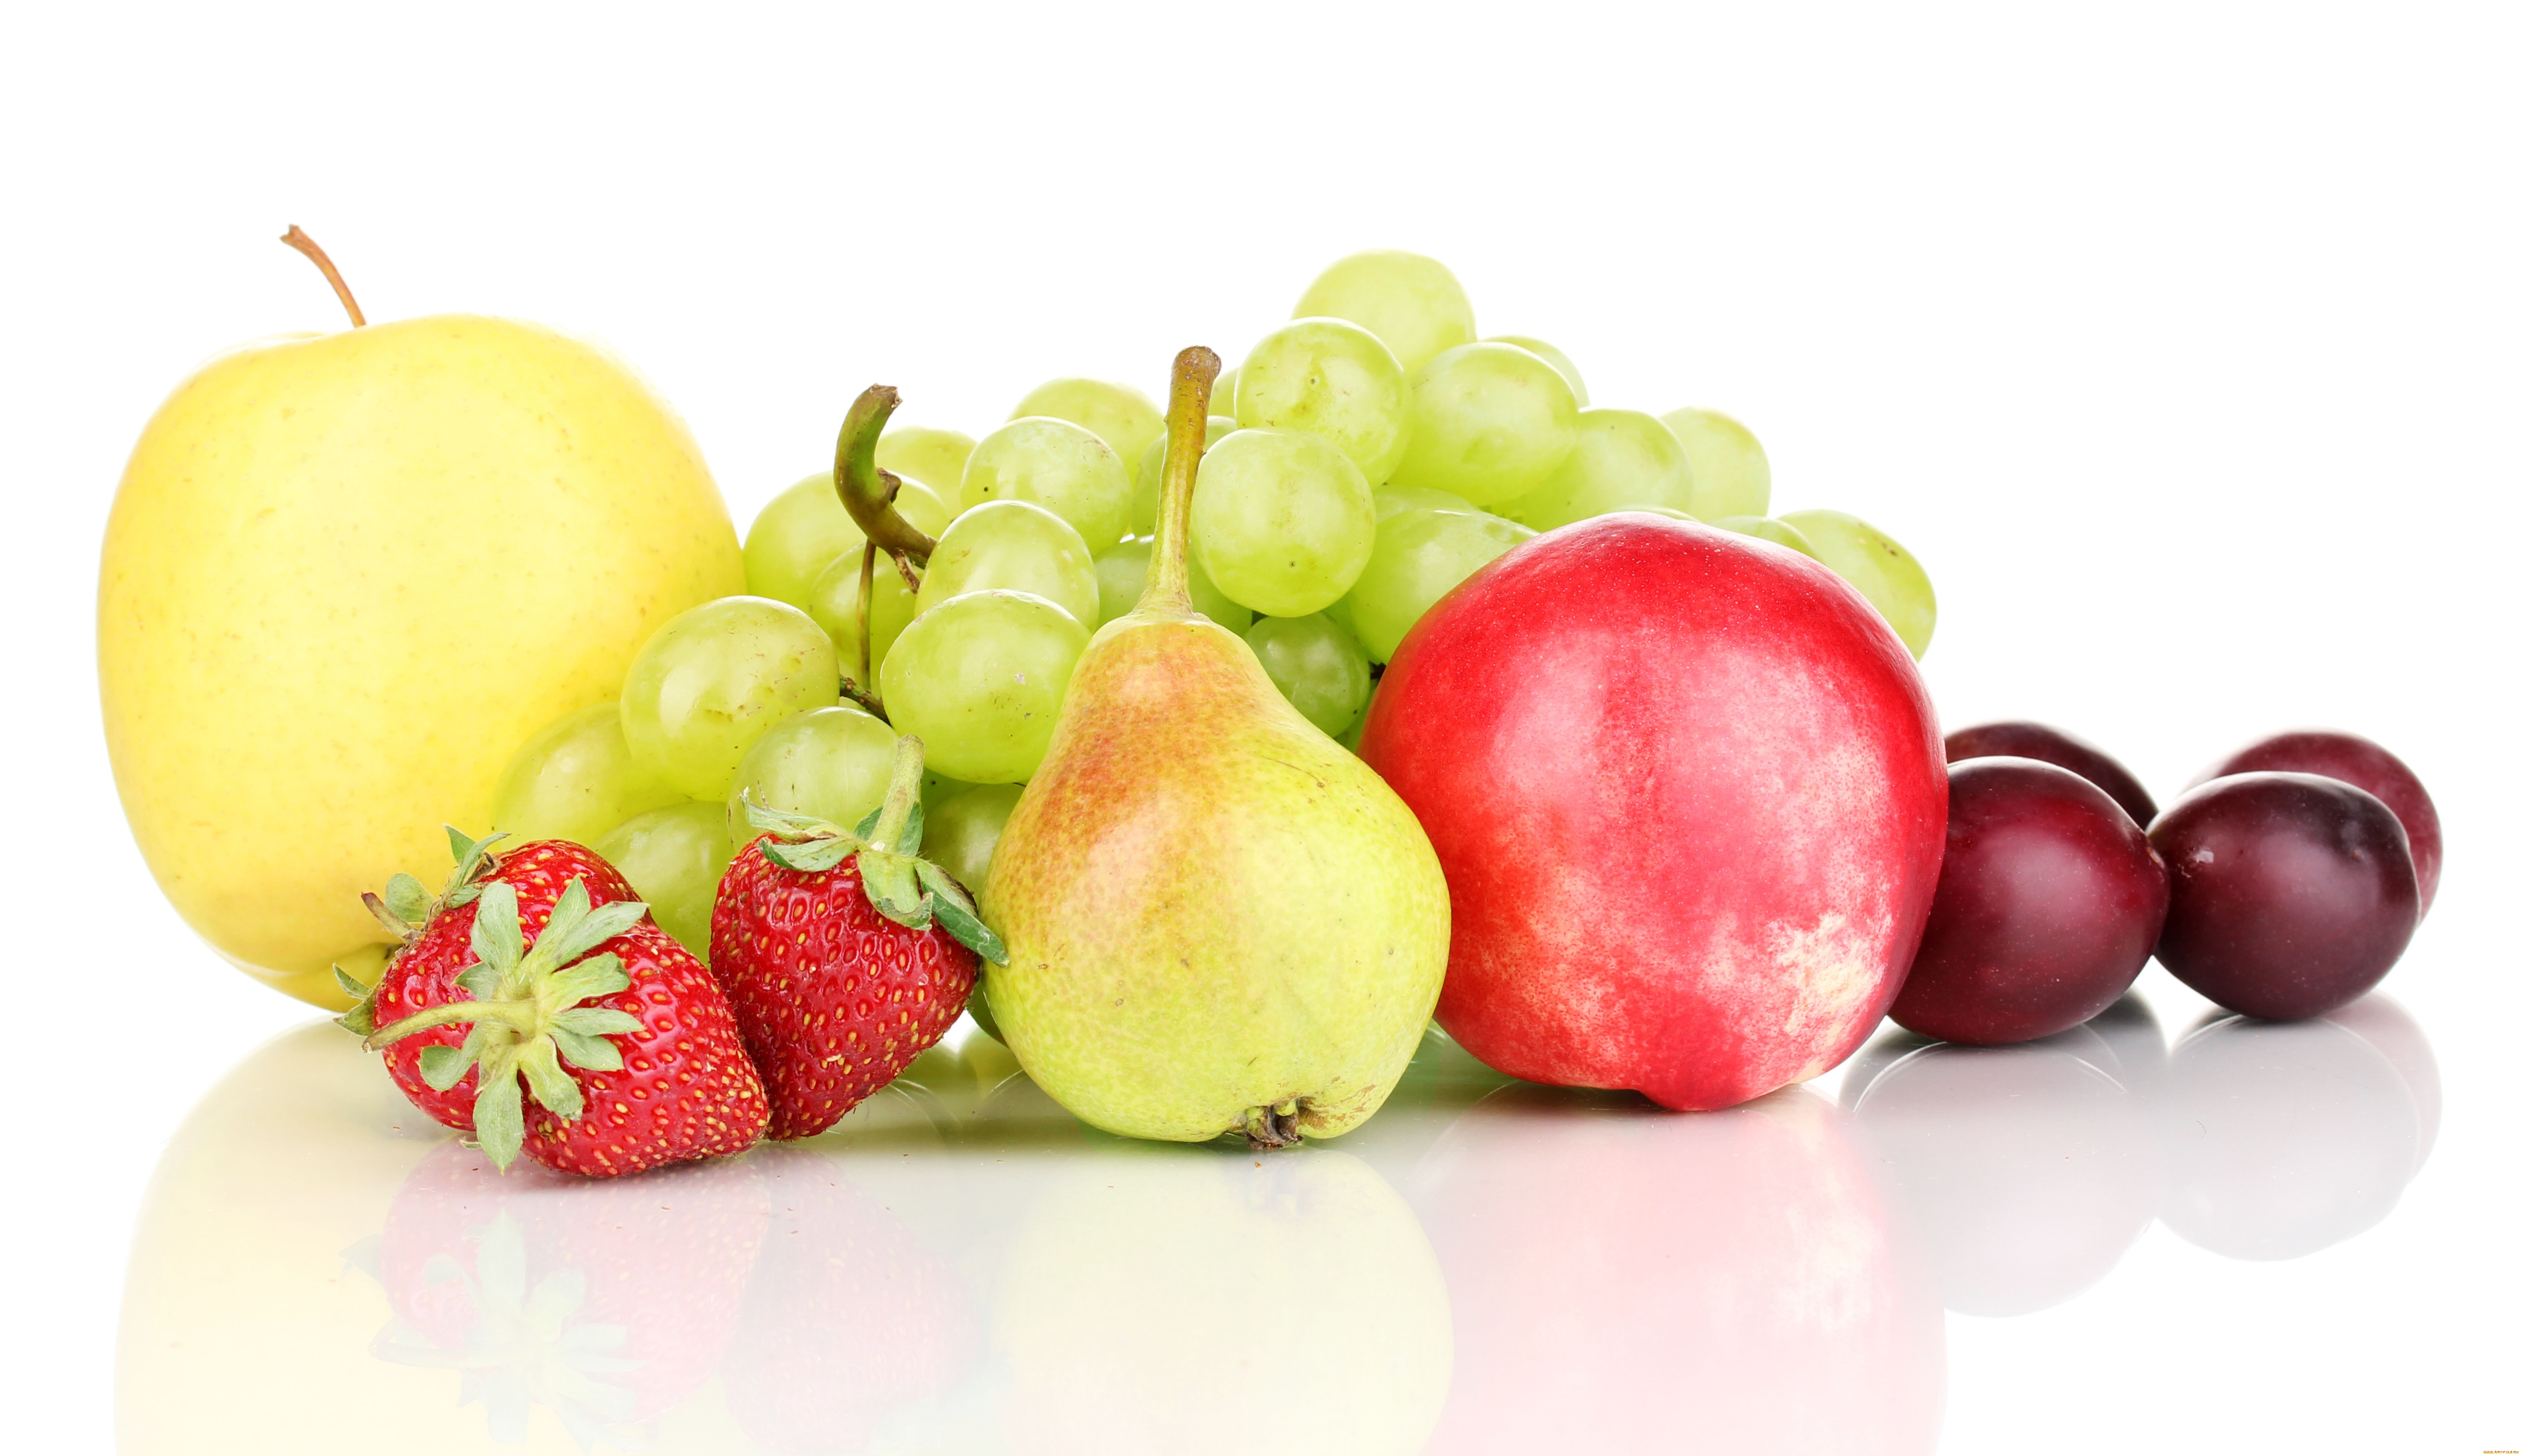 еда, фрукты, ягоды, яблоки, груша, клубника, виноград, сливы